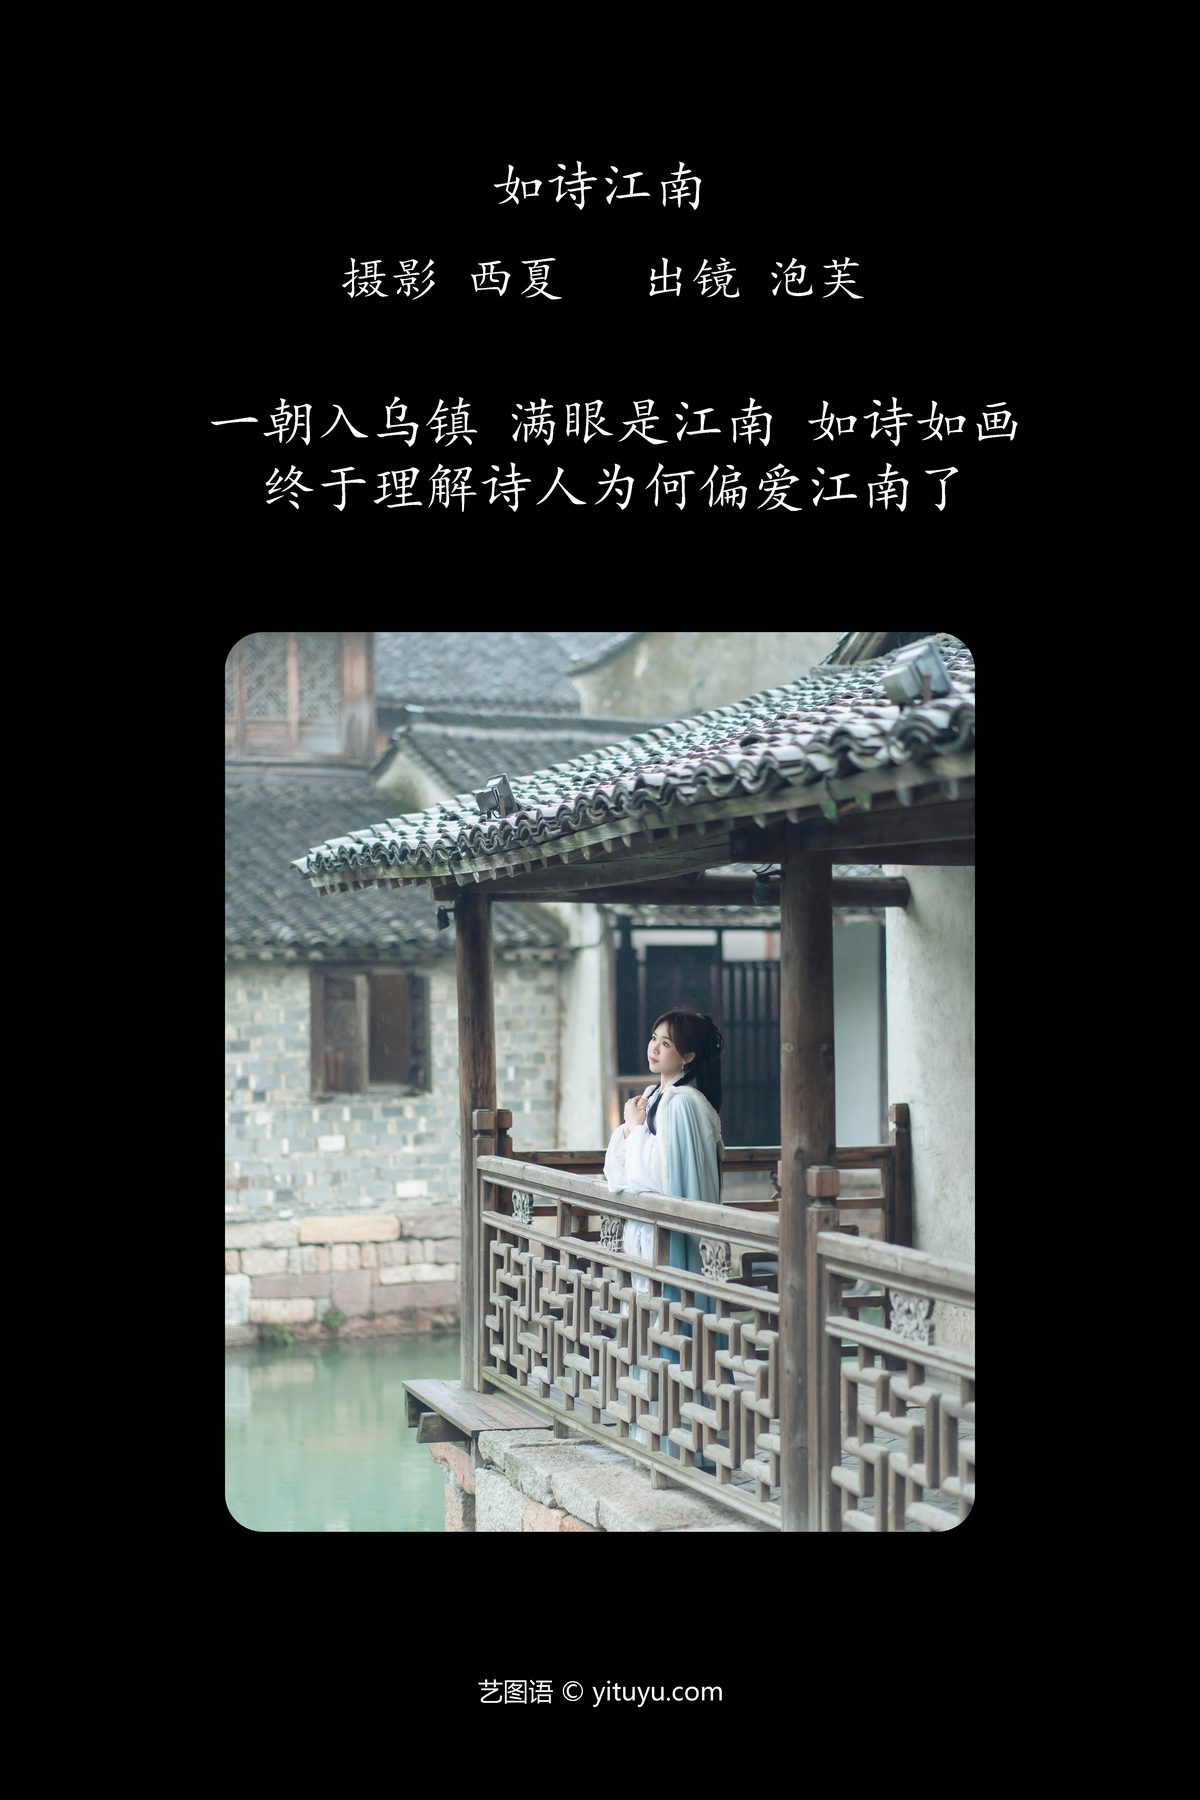 YiTuYu艺图语 Vol 6221 Pao Fu Xiao Fang 0001 7845267543.jpg